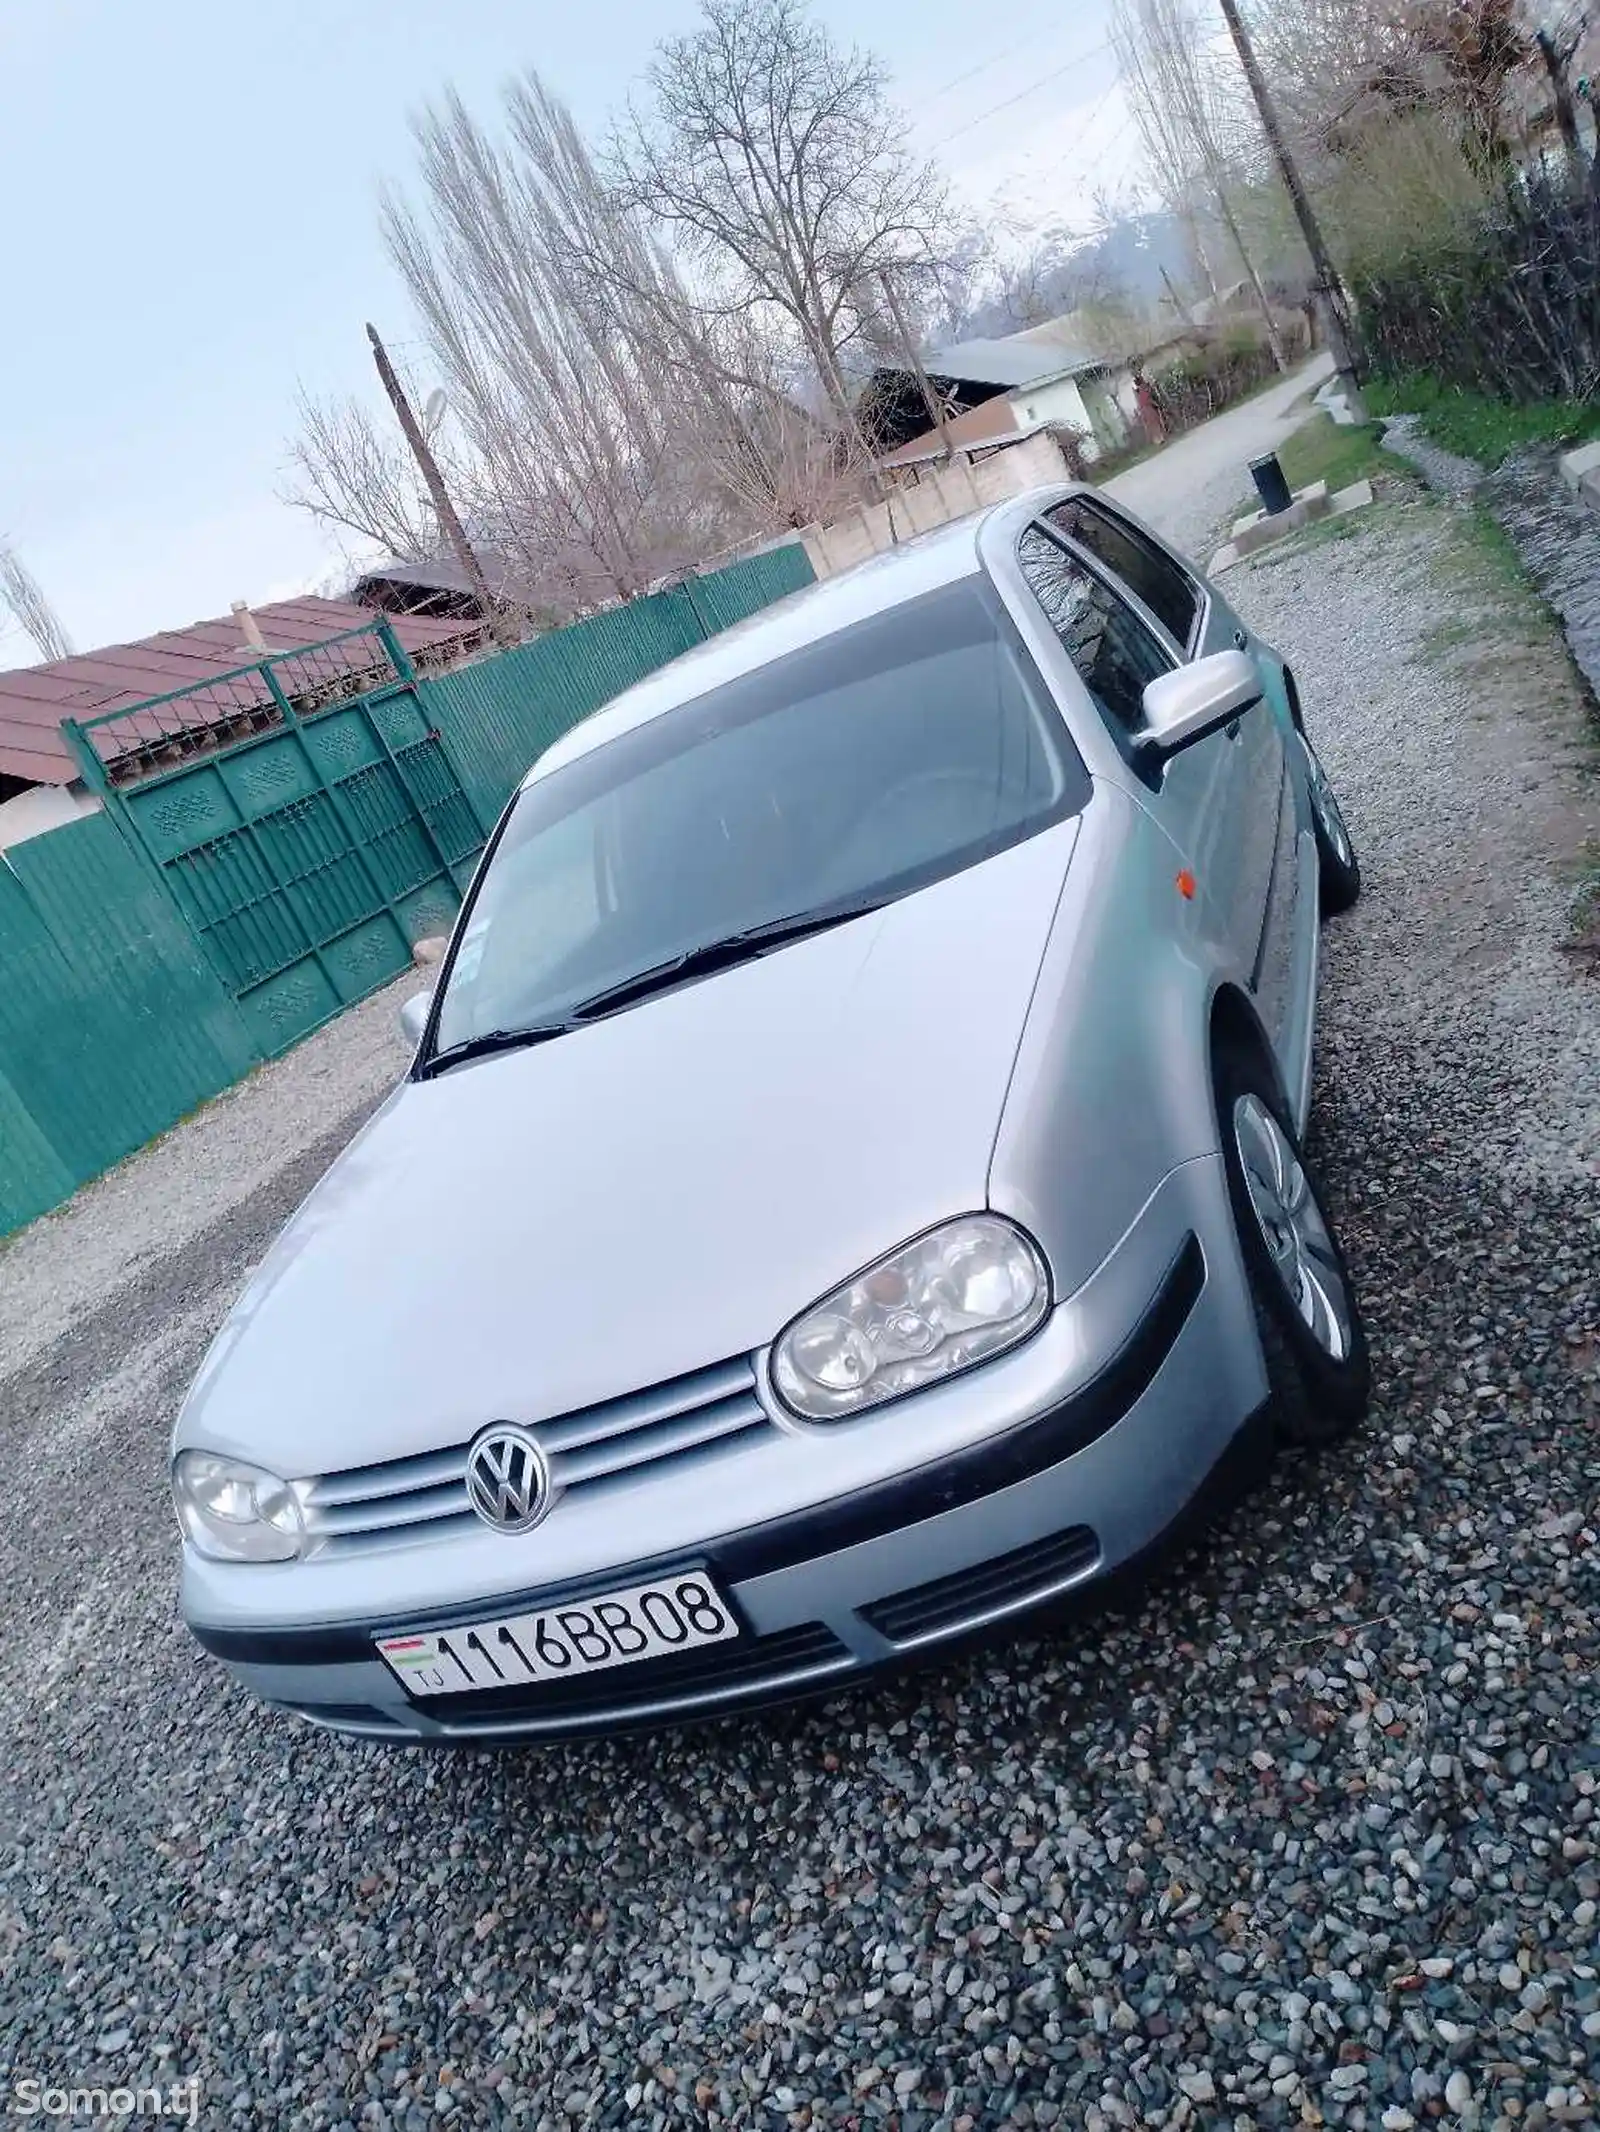 Volkswagen Golf, 1999-1